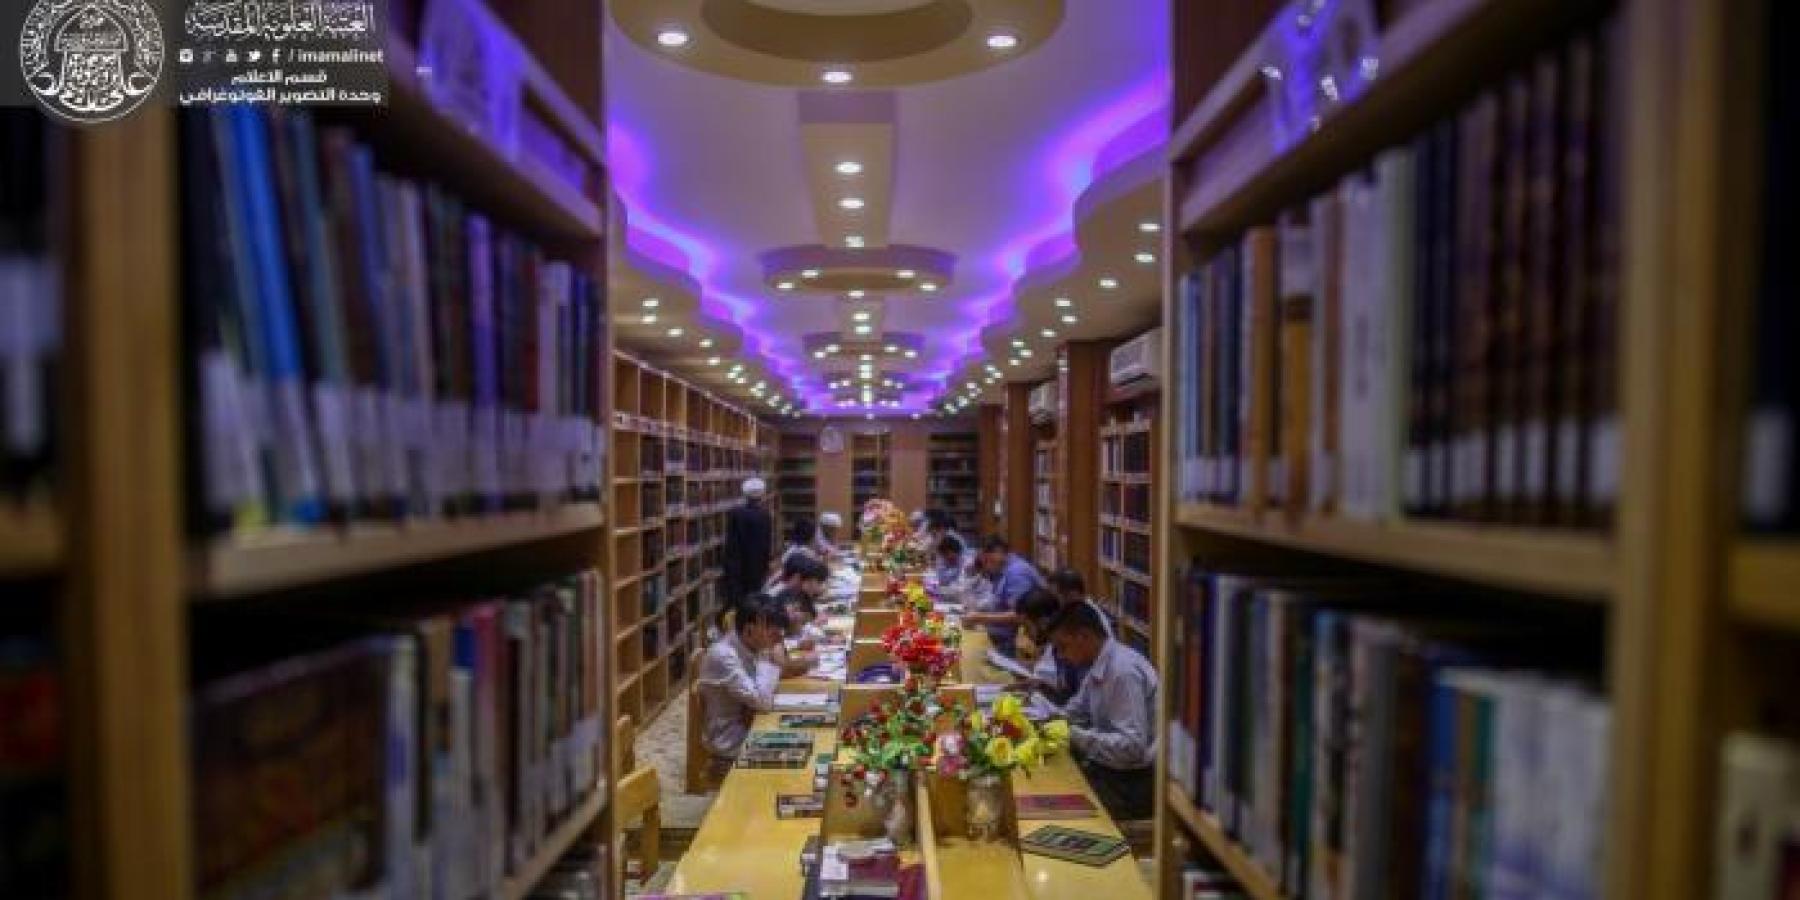 رفد مكتبة الروضة الحيدرية بأكثر من 6 آلاف رسالة وأطروحة جامعية في مختلف علوم المعرفة من جامعتي بغداد والبصرة